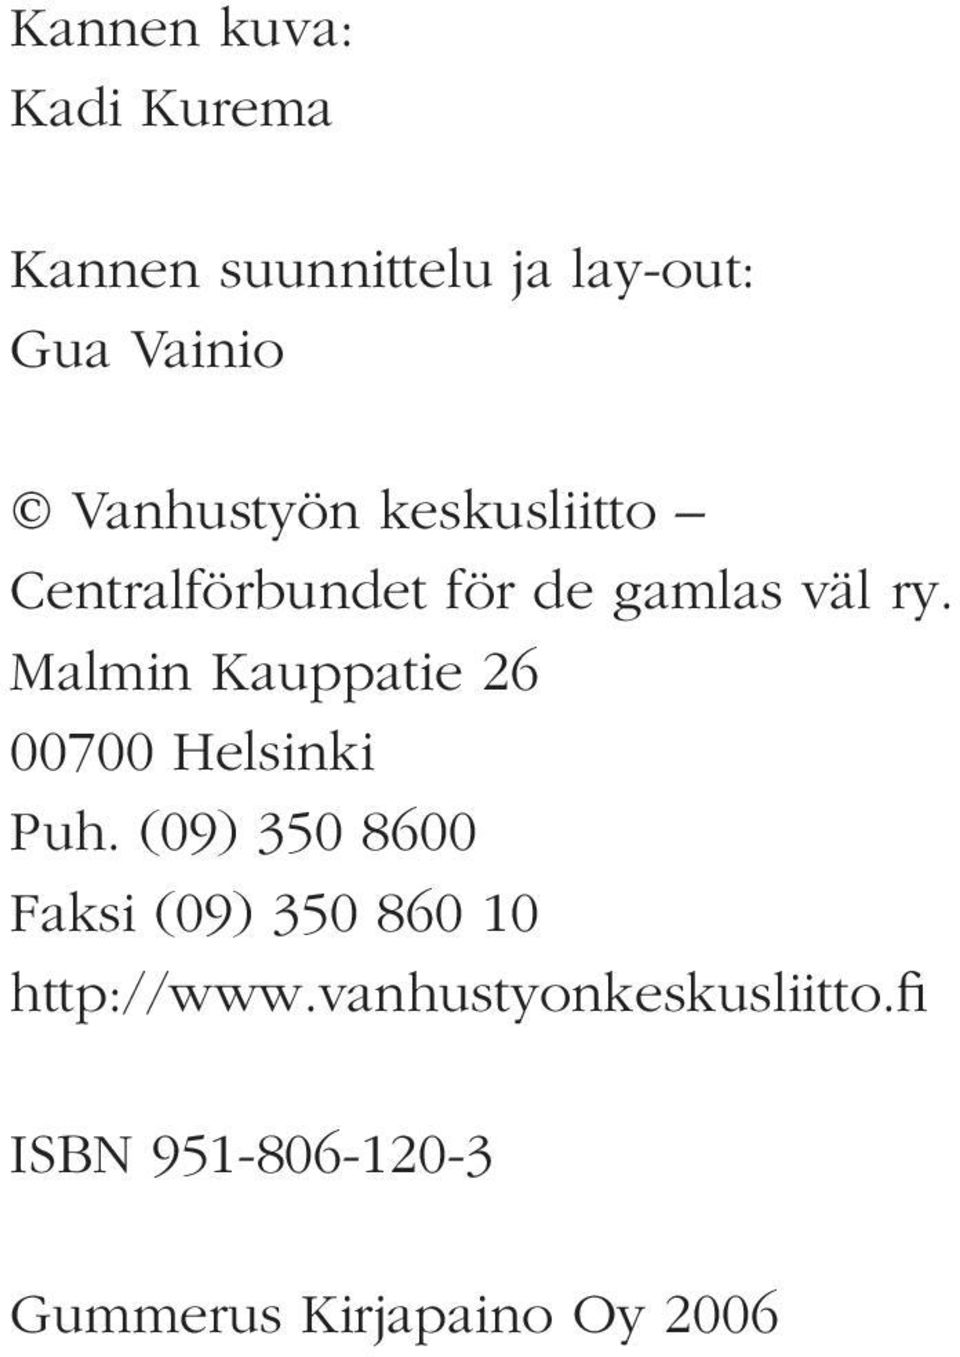 Tutkimusraportti 2, 2003 Pirkko Routasalo Kaisu Pitkälä Niina Savikko Reijo Tilvis: Ikääntyneiden yksinäisyys. Kyselytutkimuksen tuloksia. Tutkimusraportti 3, 2003 Kaisu Pitkälä (toim.